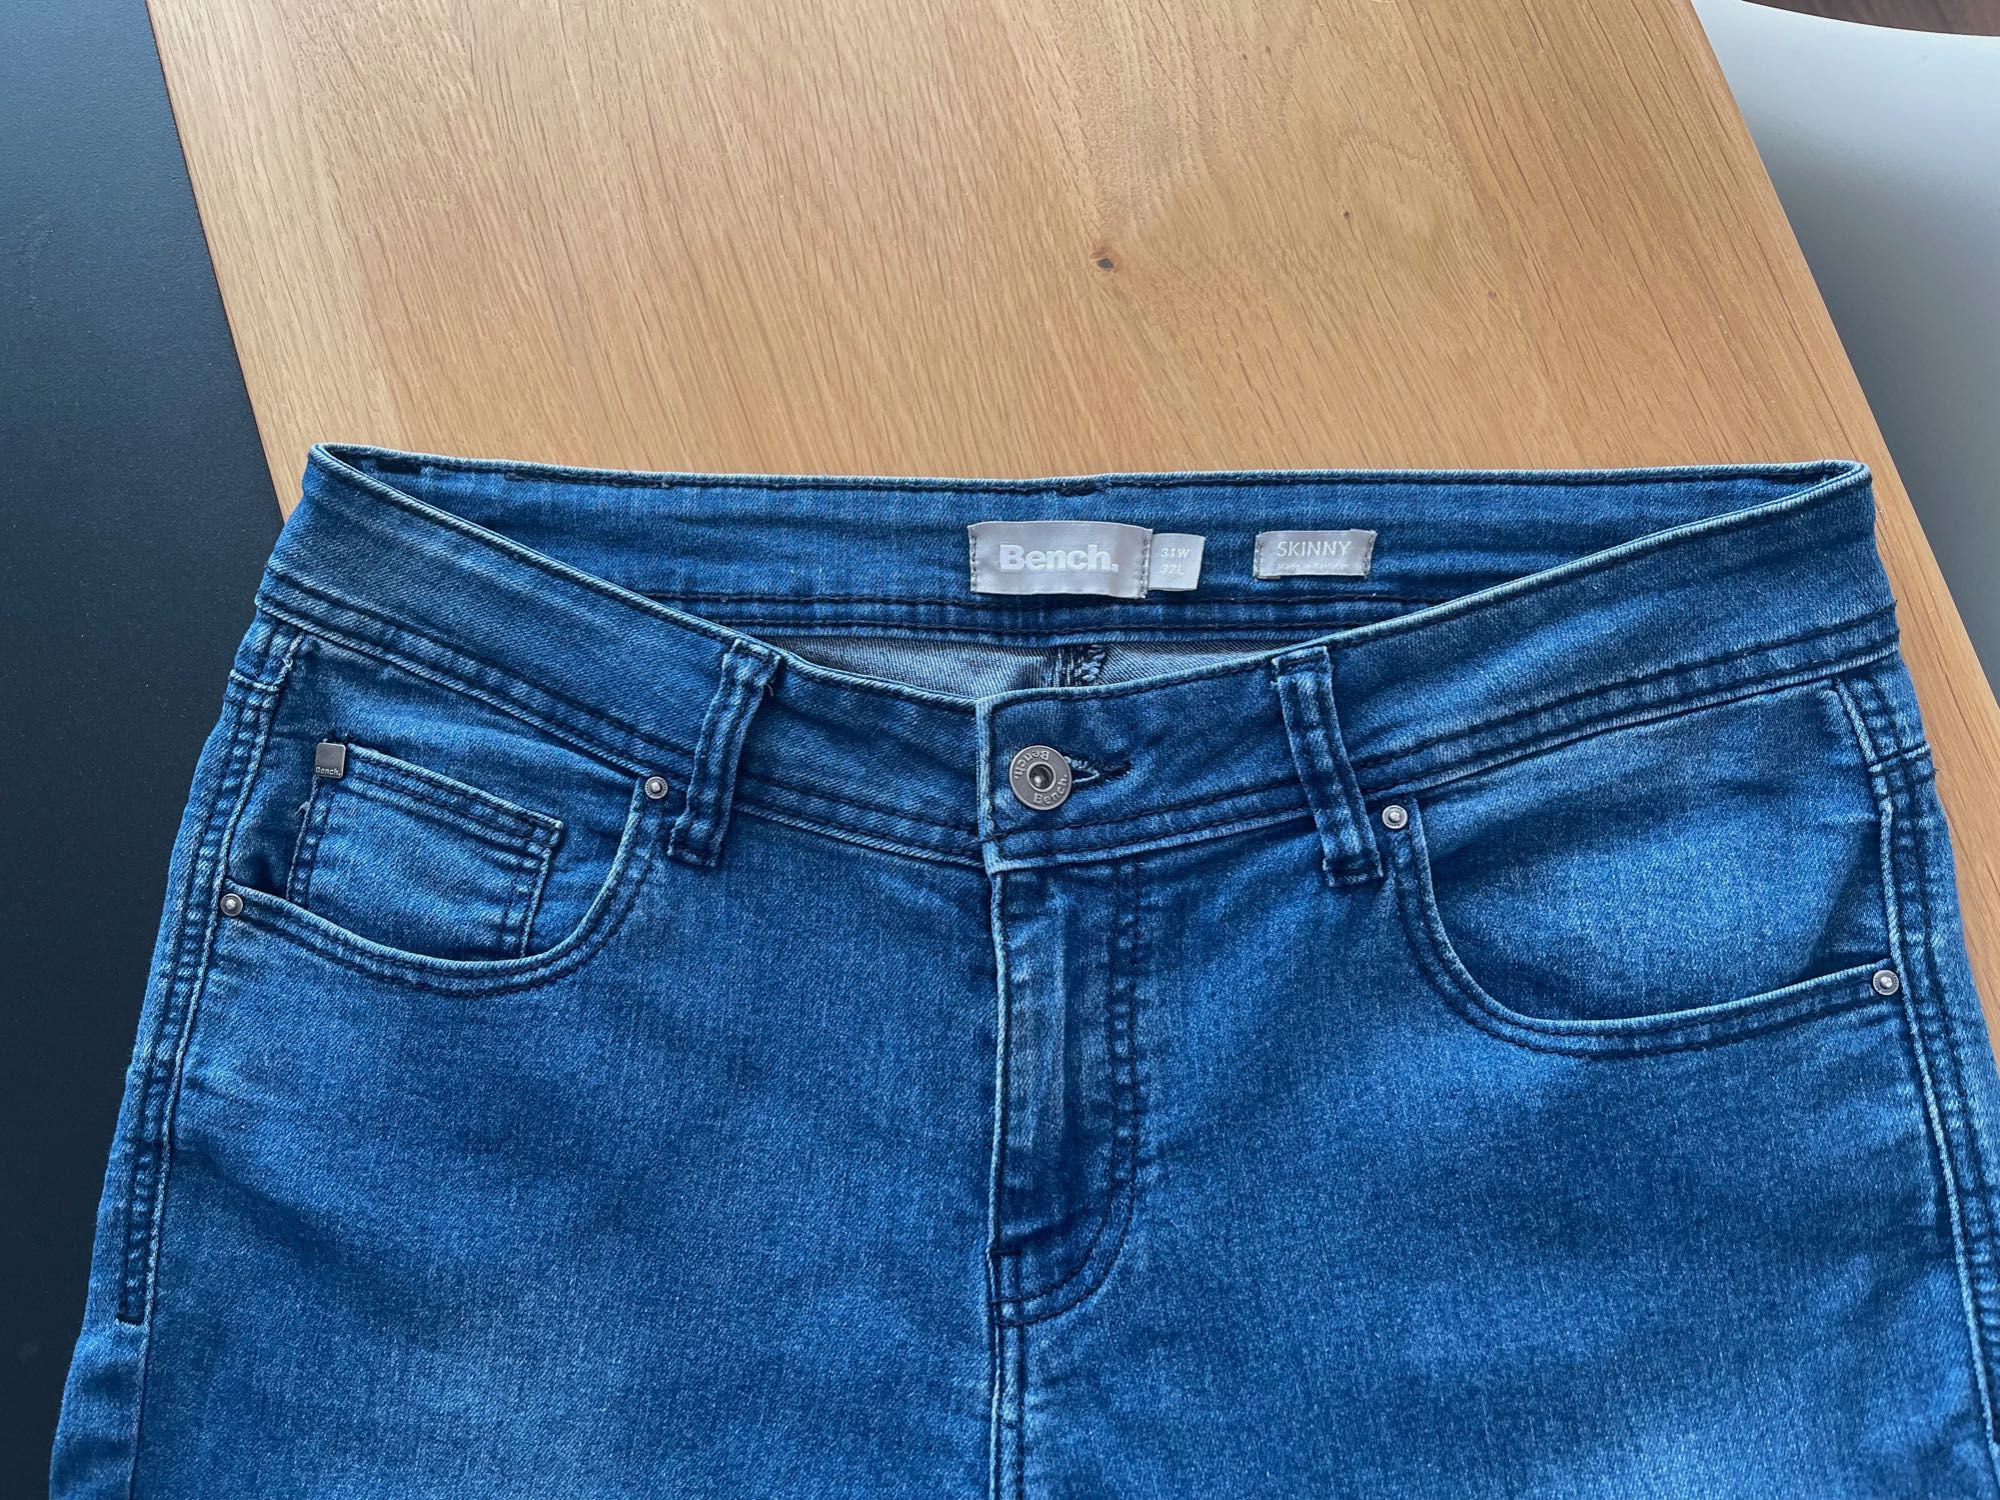 Spodnie damskie jeans Bench, W31L32, ciemny niebieski